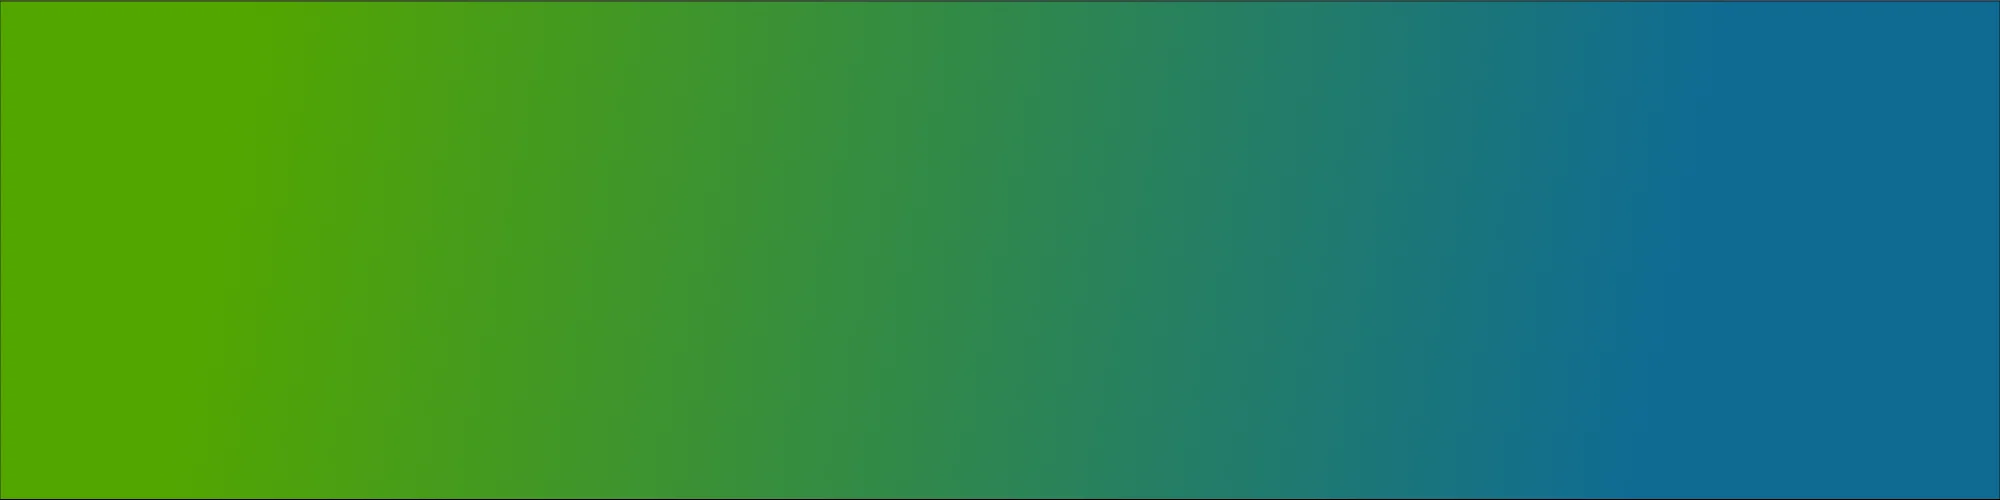 Colour gradient green-blue